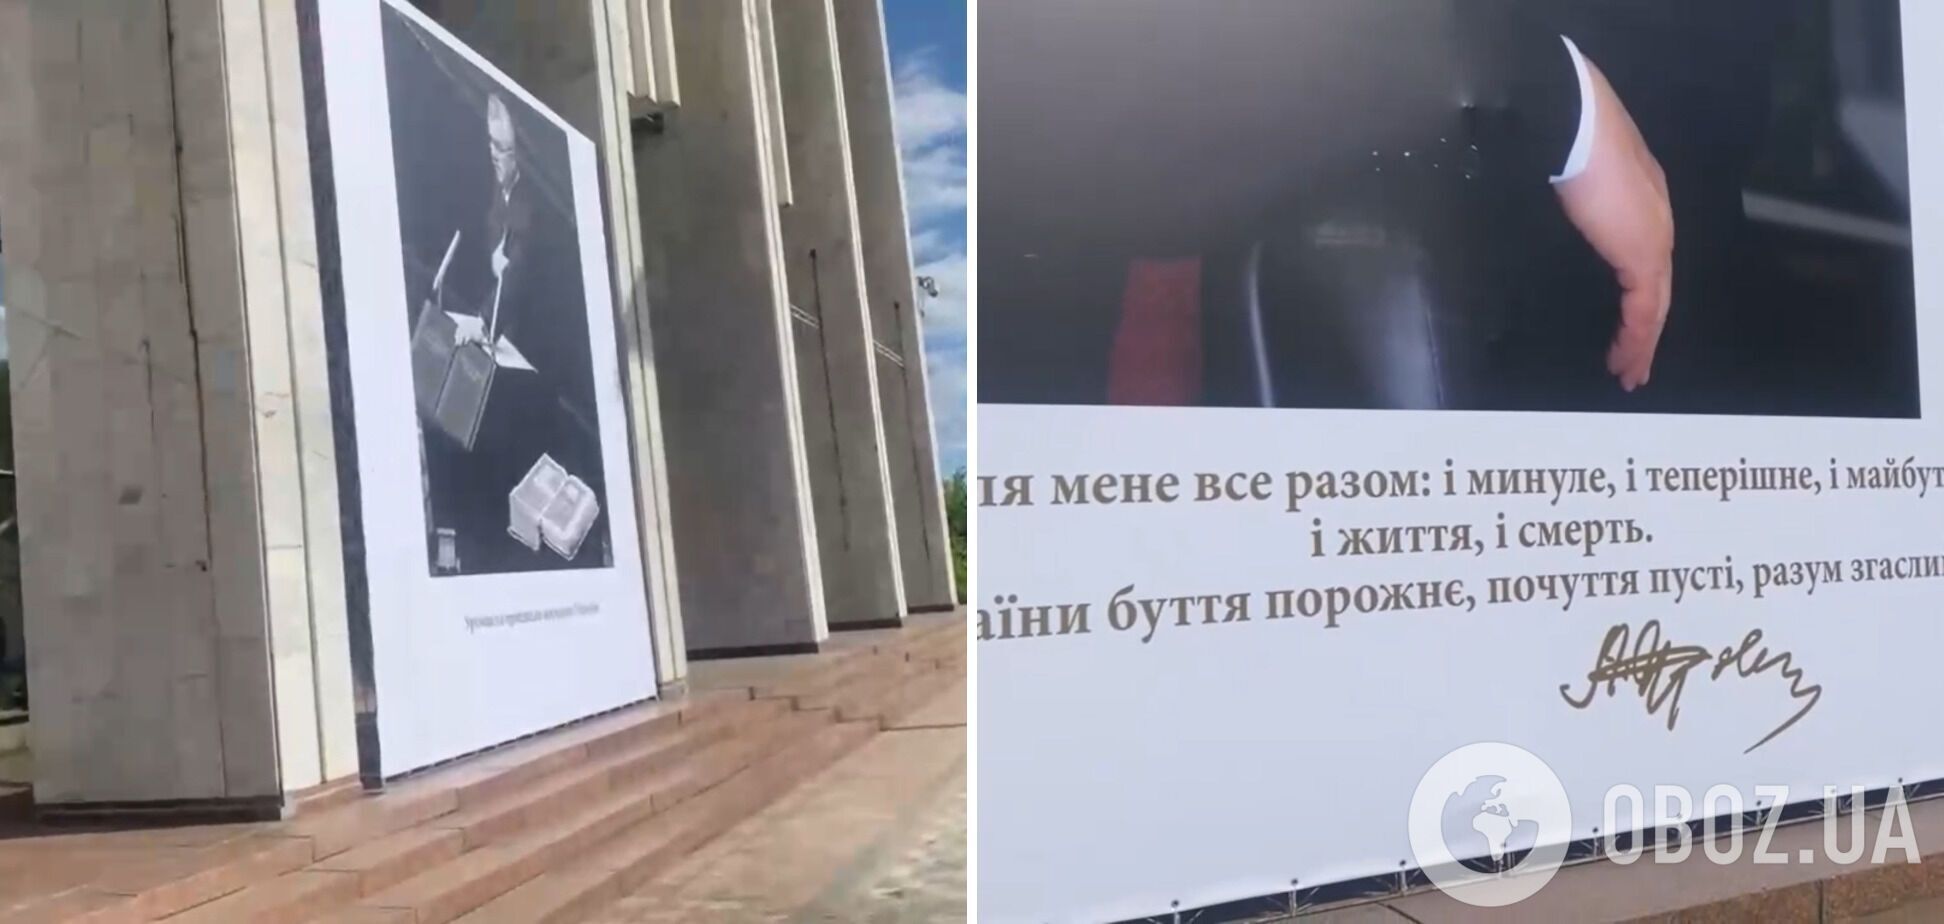 Плакати з цитатами Кравчука в 'Українському домі'